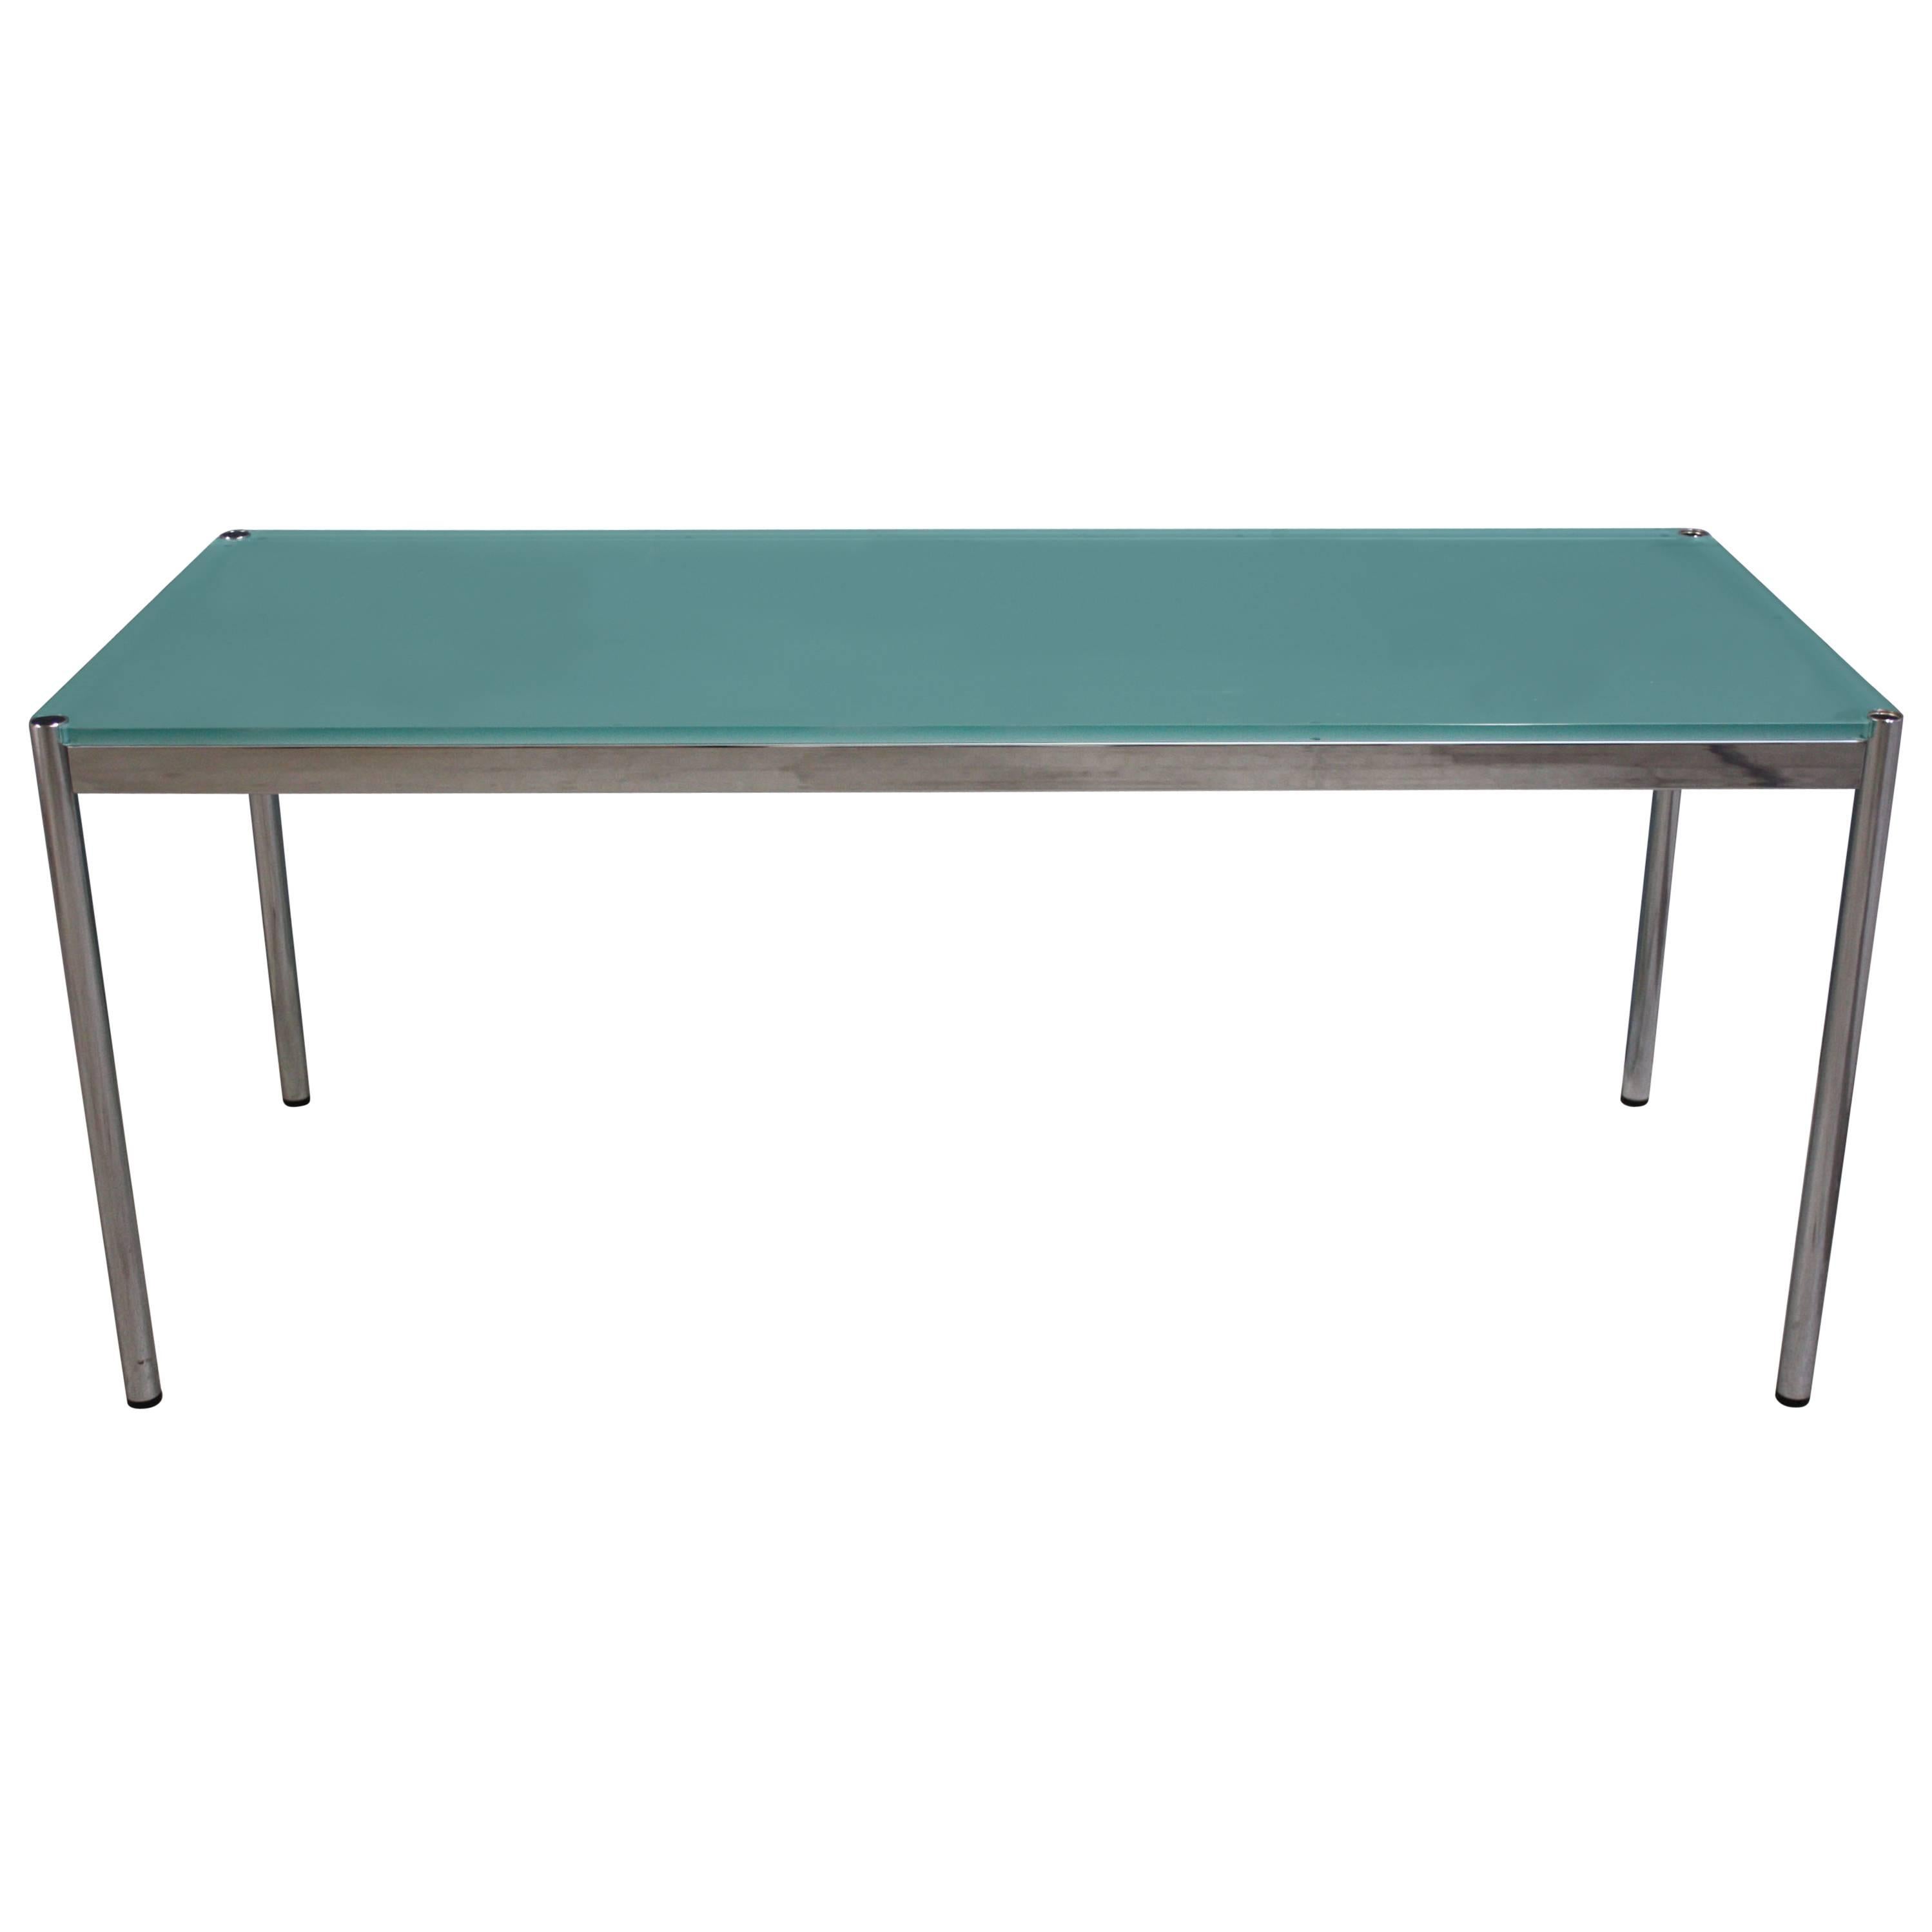 Minimalistisches Design: Tisch aus verchromtem Stahl und Glas von USM Haller. Zustand fast neu.
Zeitloses, elegantes und klassisches Design made in Switzerland 
